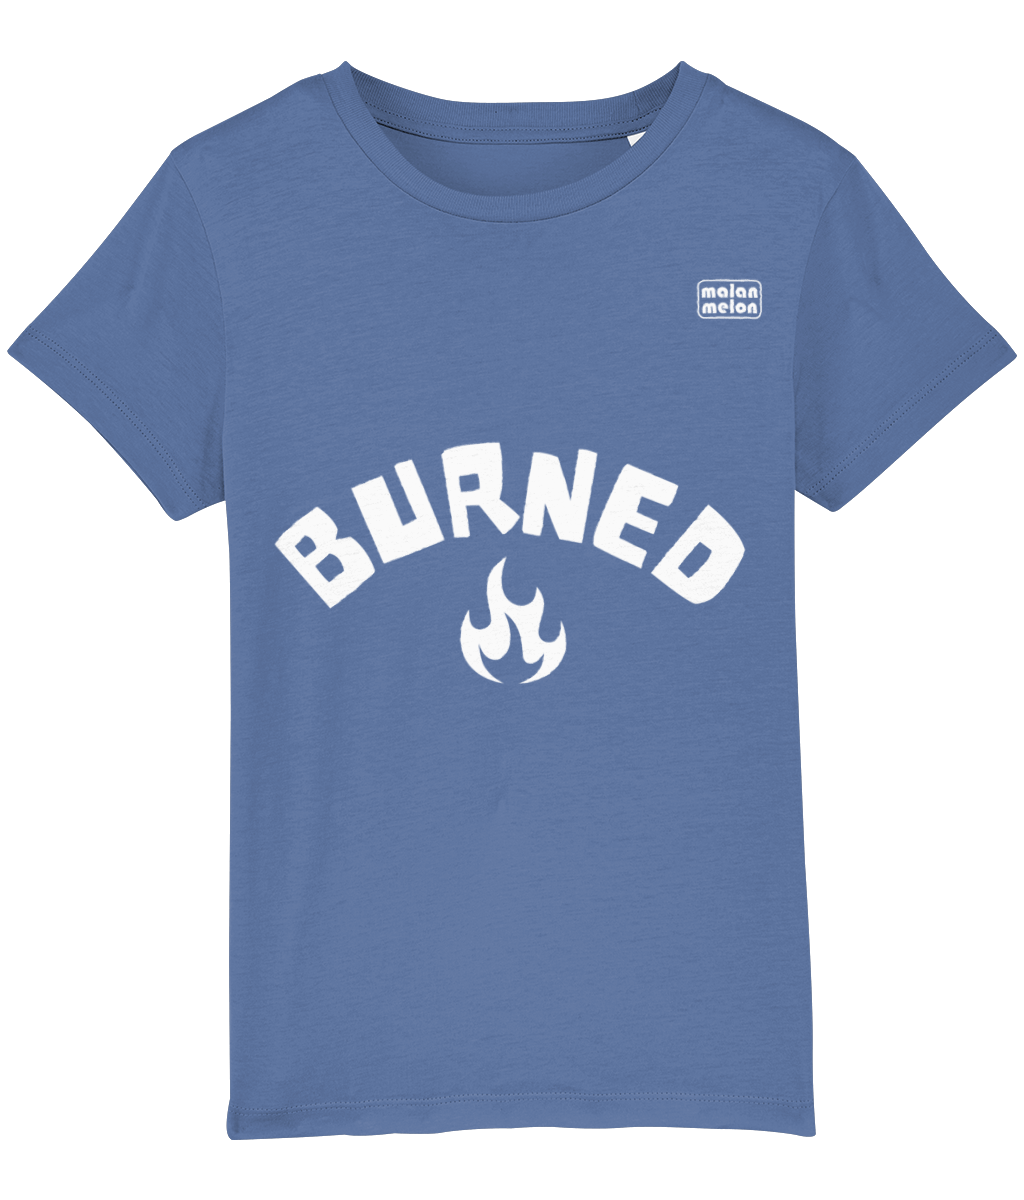 malanmelon - Kids T-Shirt – Organic Cotton – Burned Slogan – White on Multi-Colours